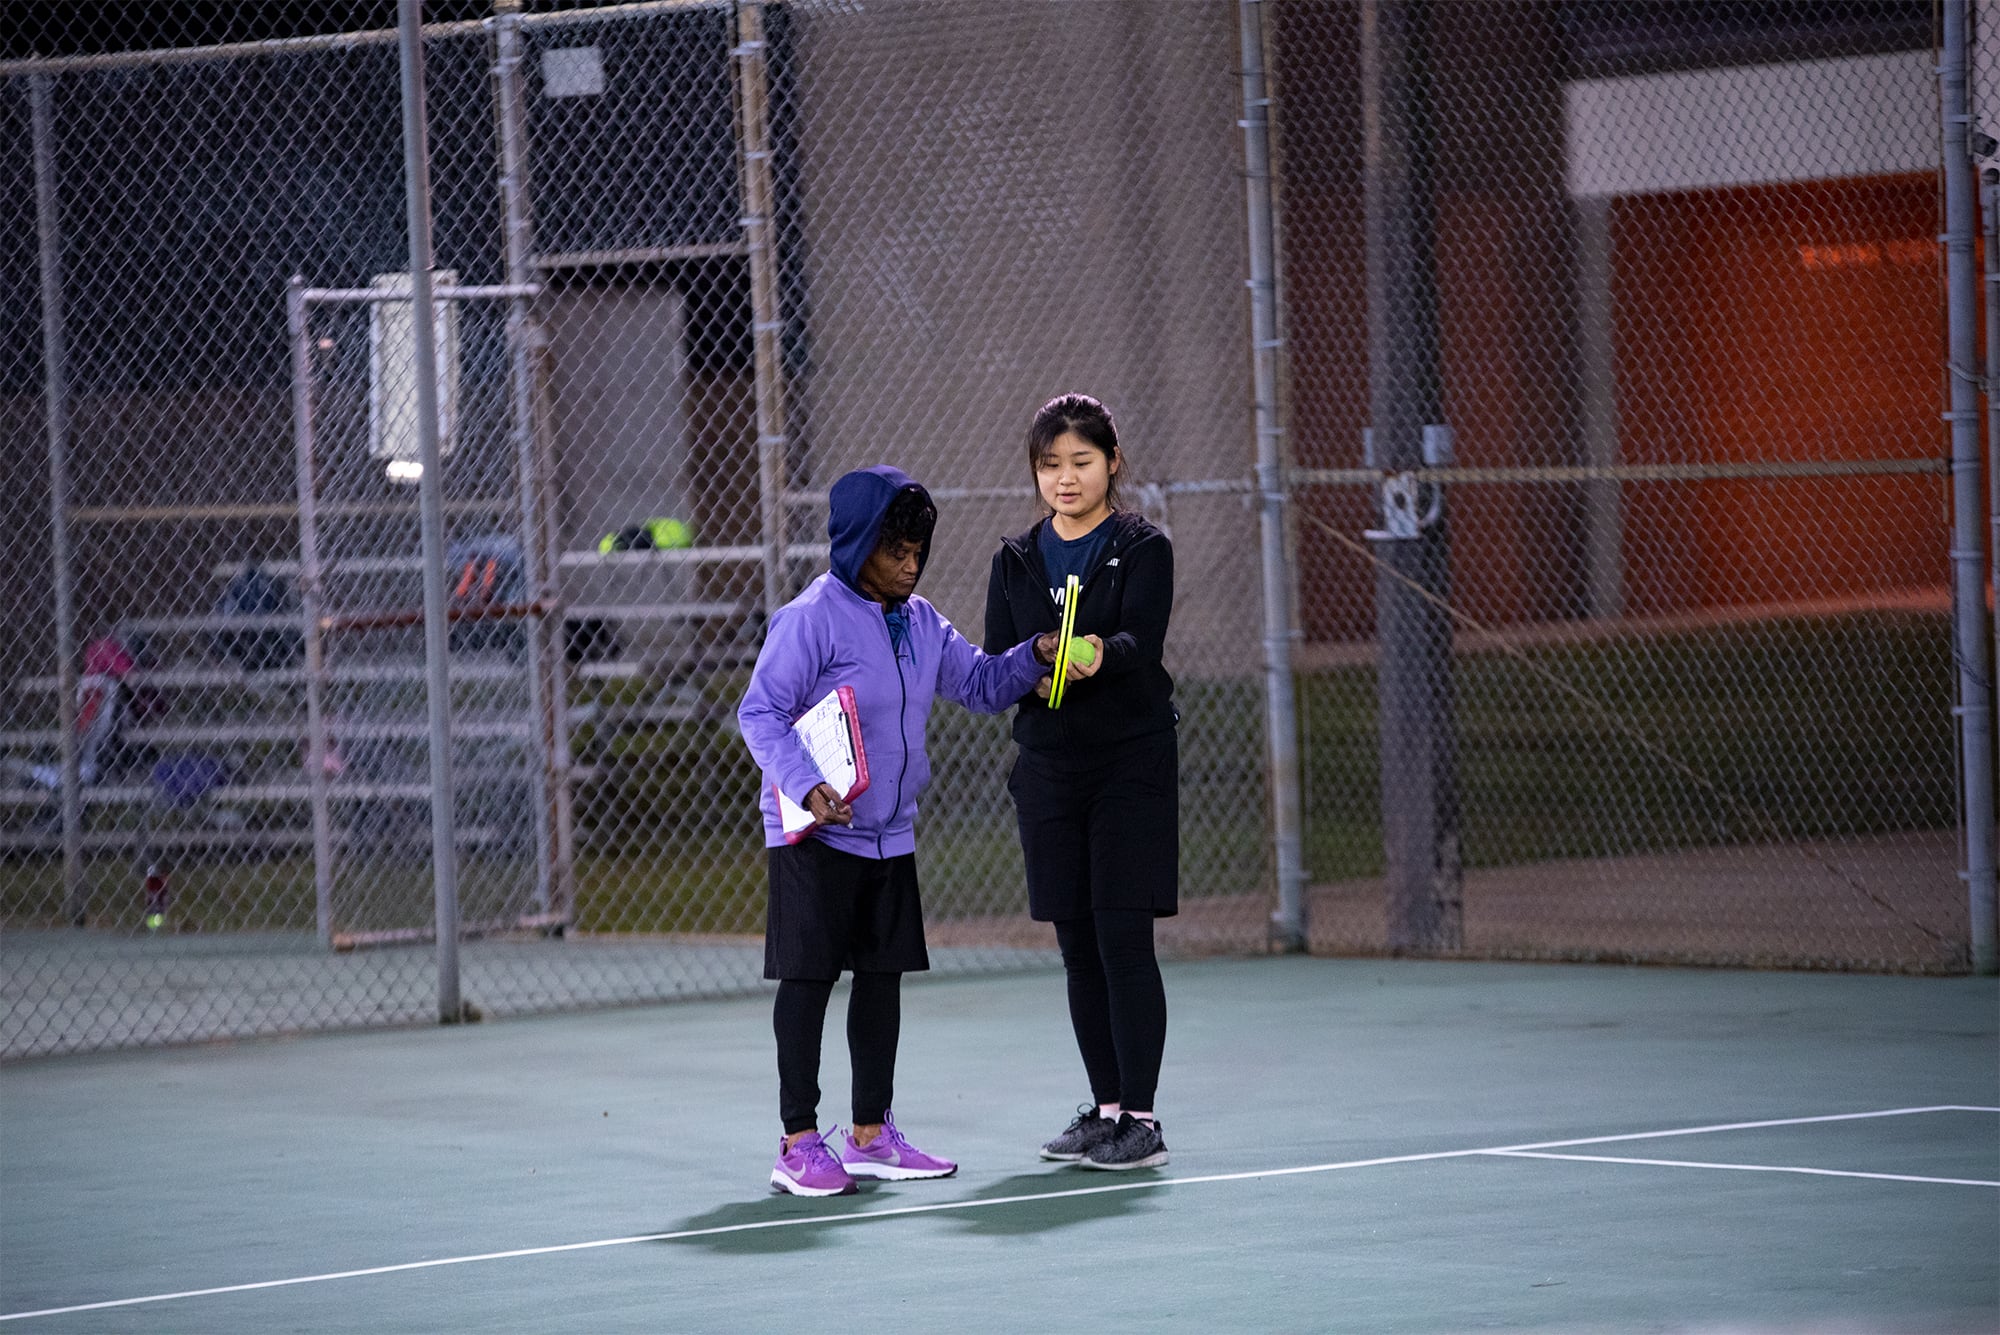 A female teacher instructing a female student in tennis class.